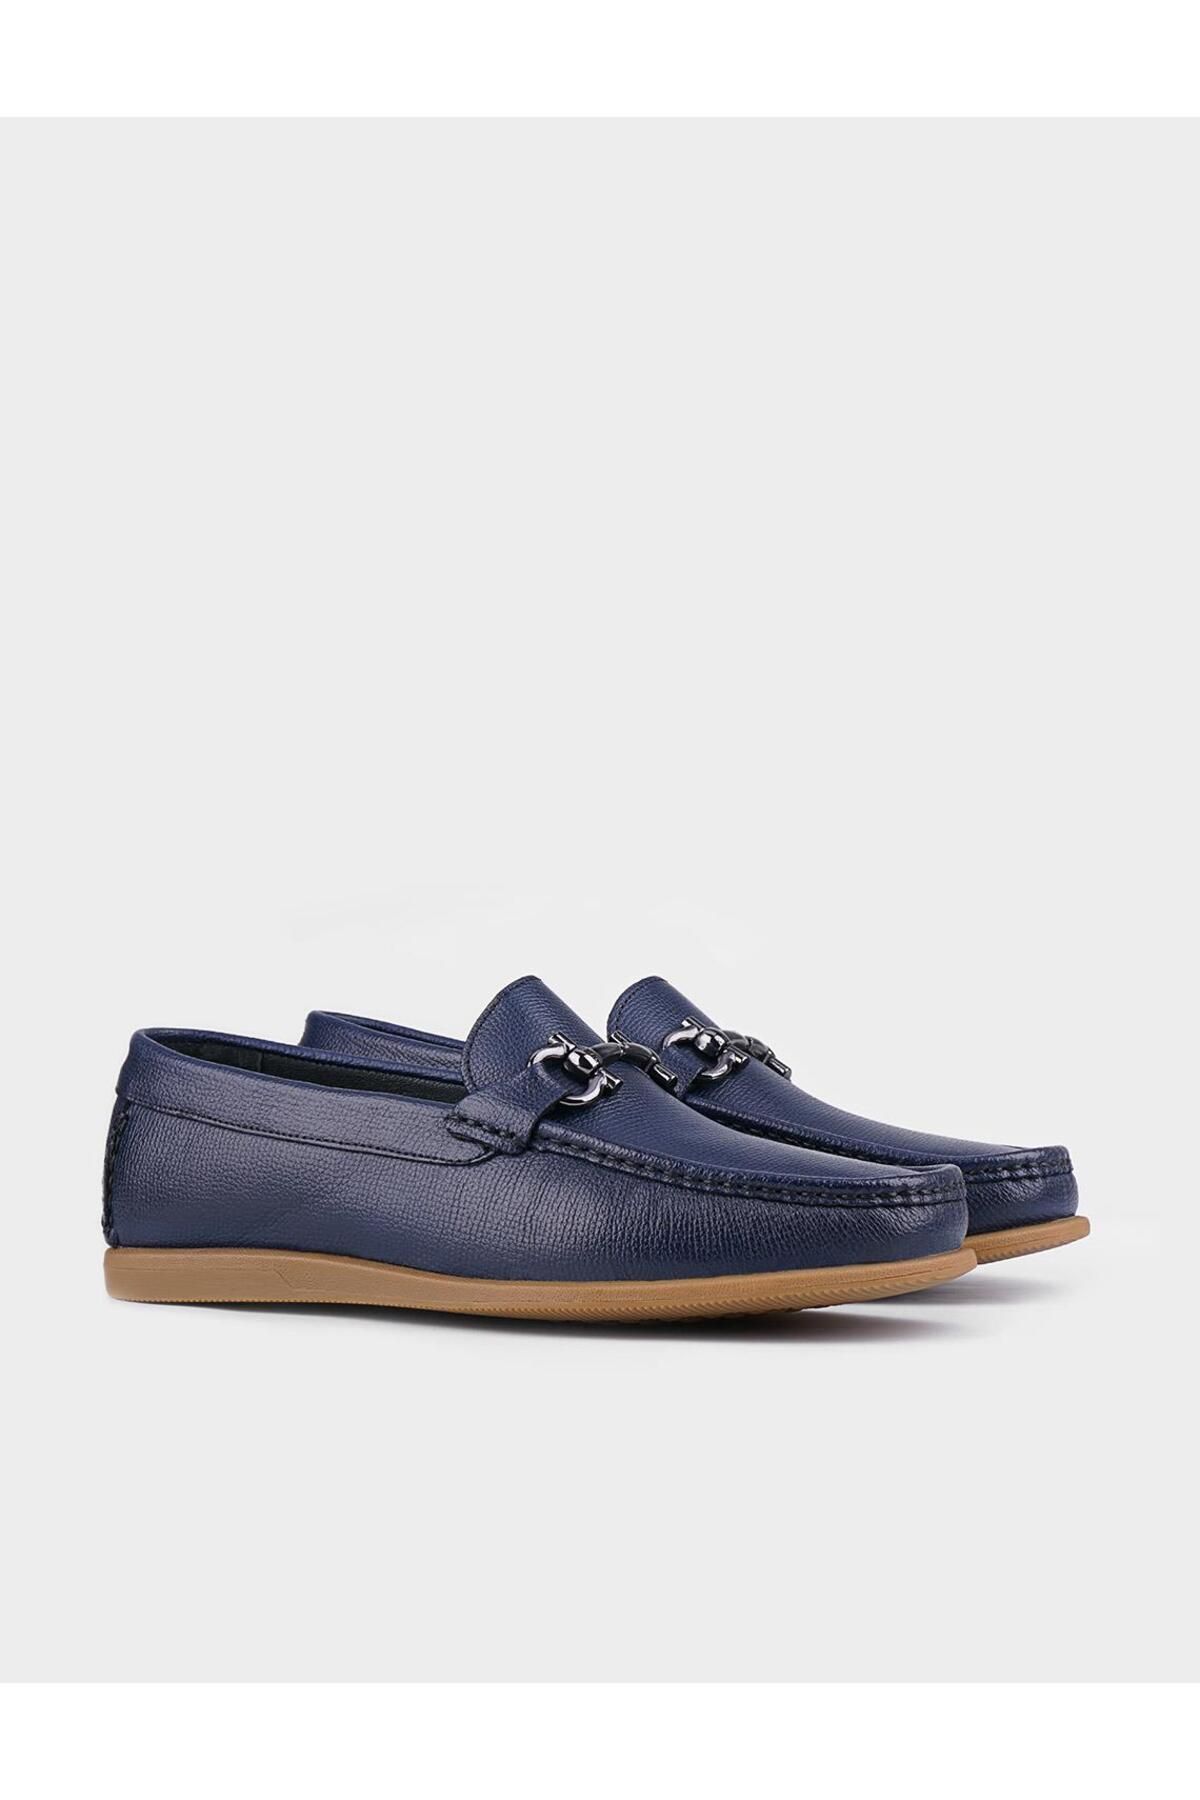 Cabani کفش های روزانه مردانه چرمی آبی با لوازم جانبی فلزی